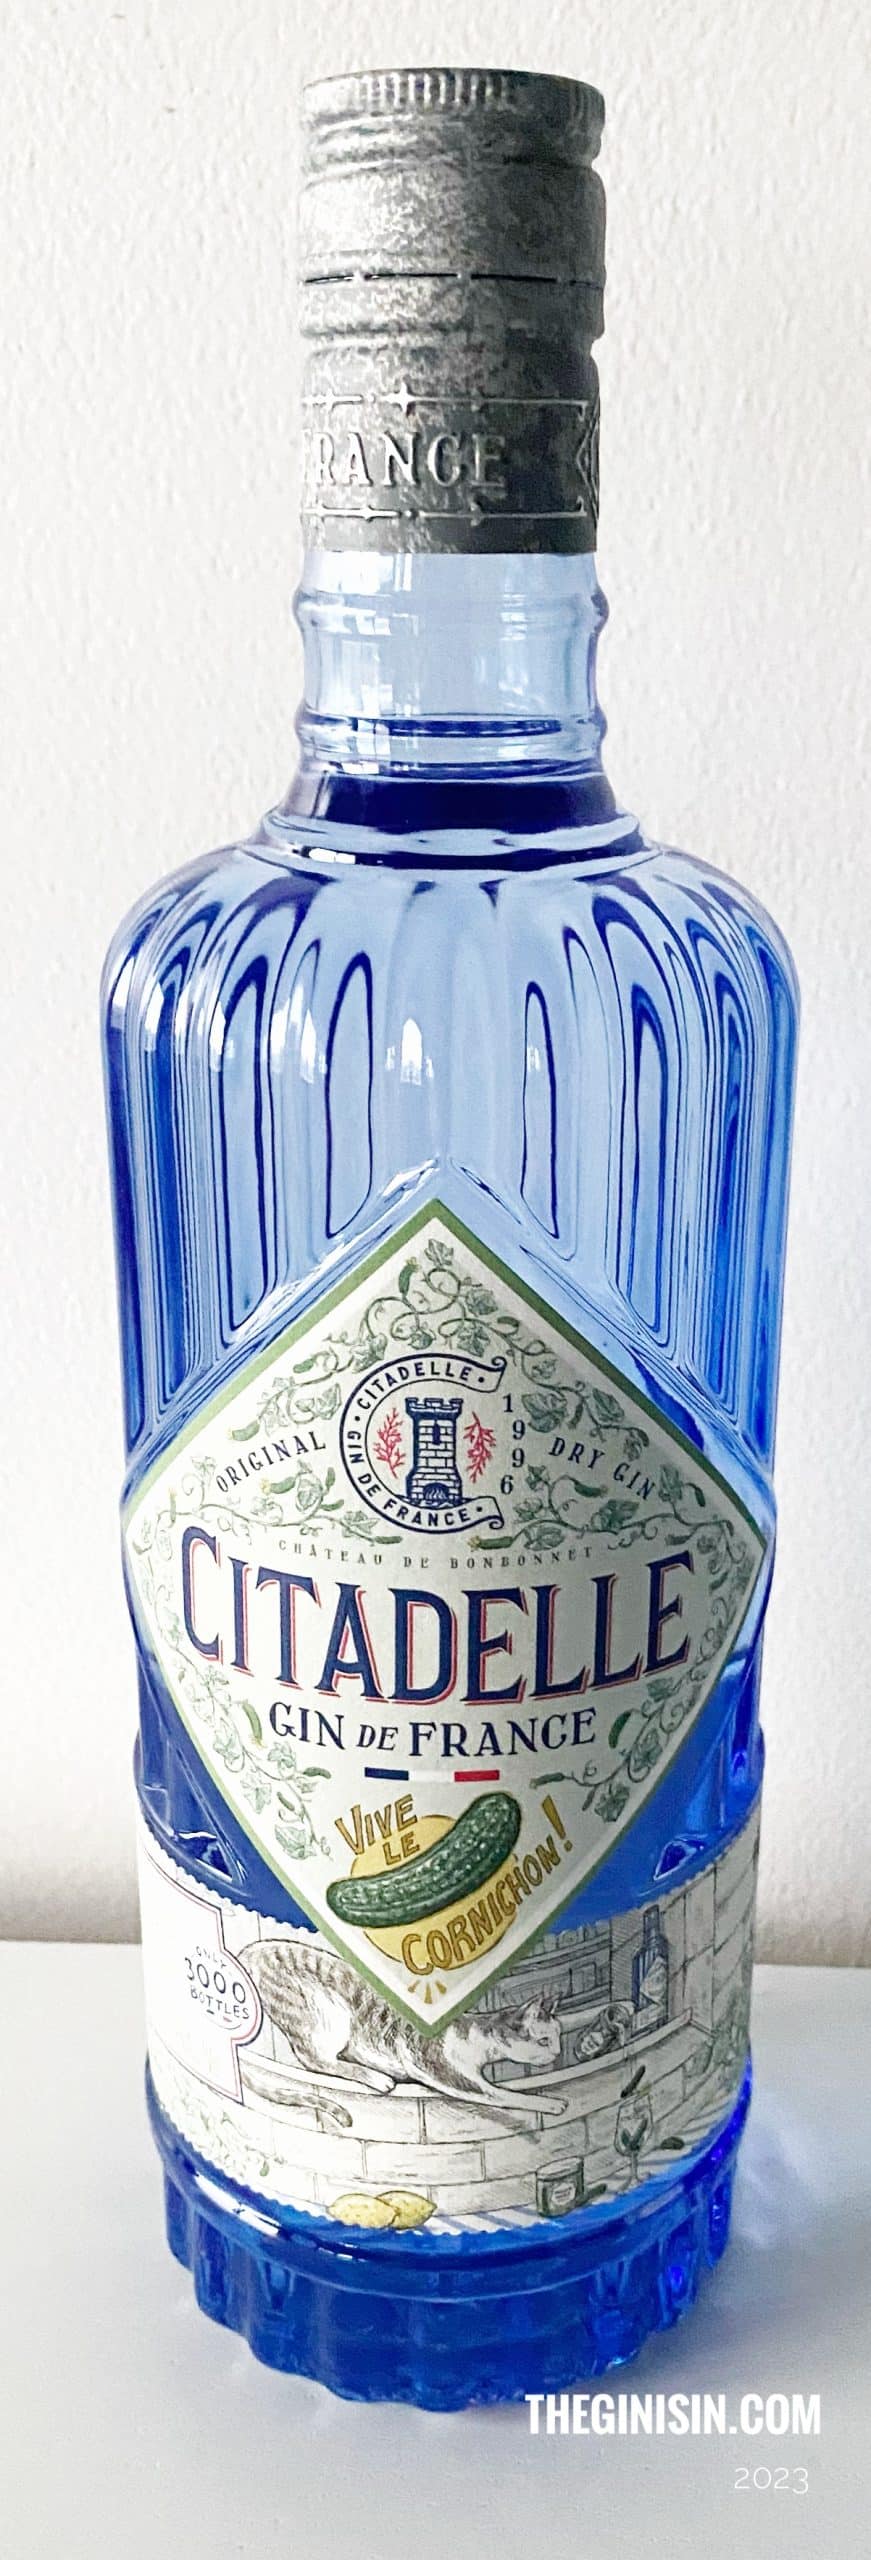 Citadelle Vive Le Cornichon Gin